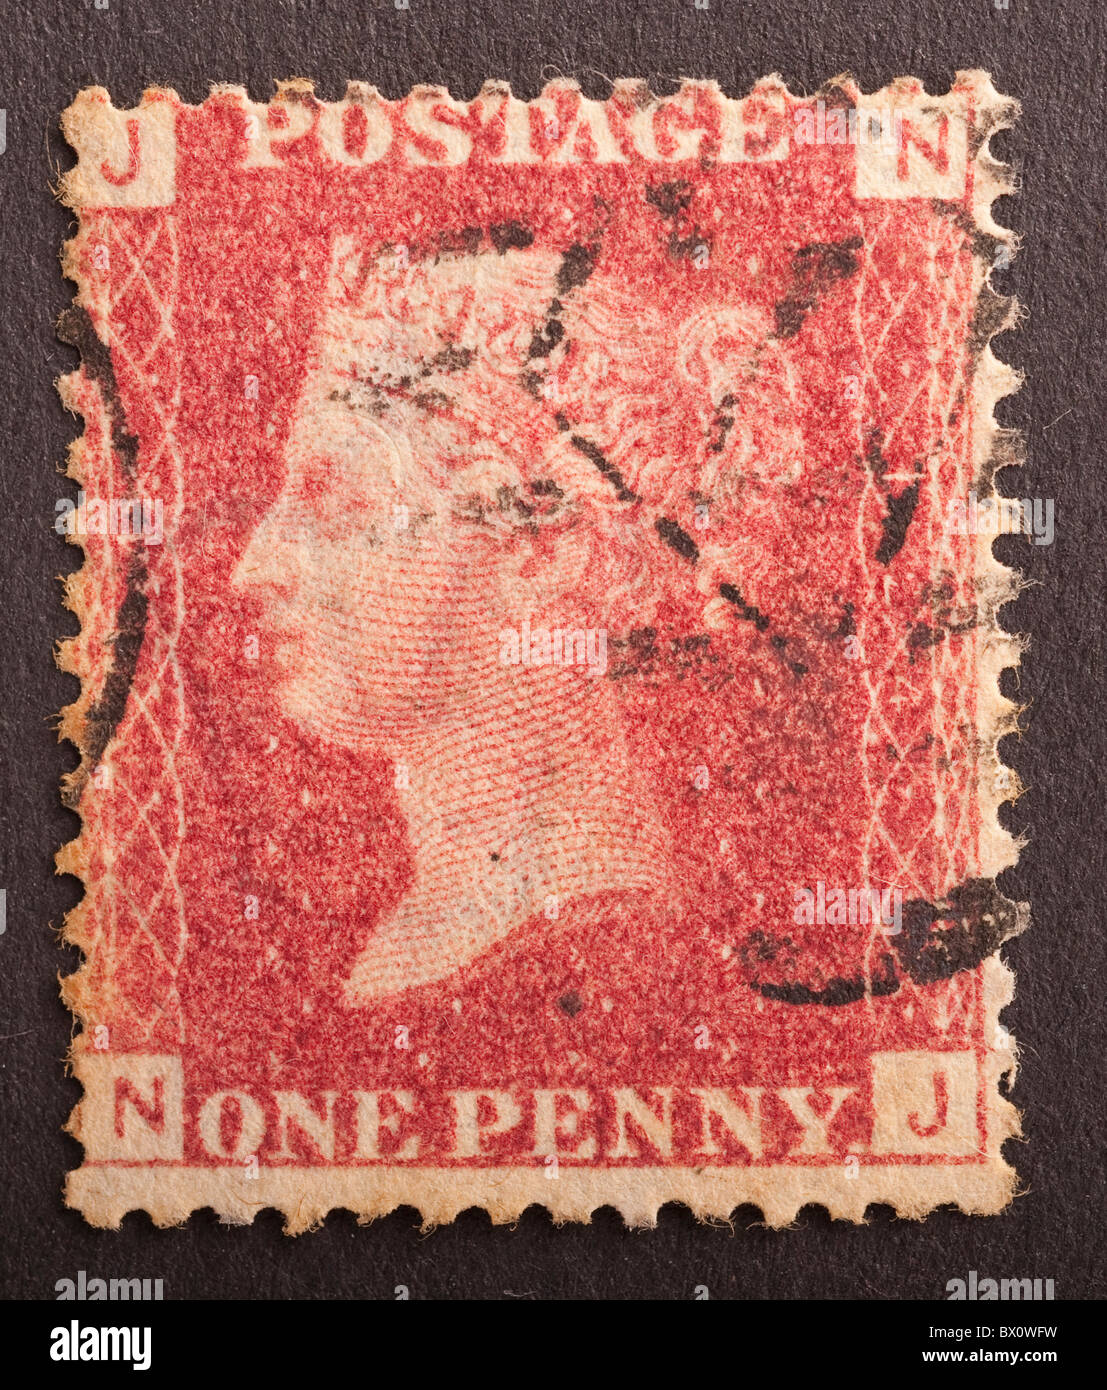 Britische Briefmarke Penny Red Corner Buchstaben J N Stockfotografie Alamy